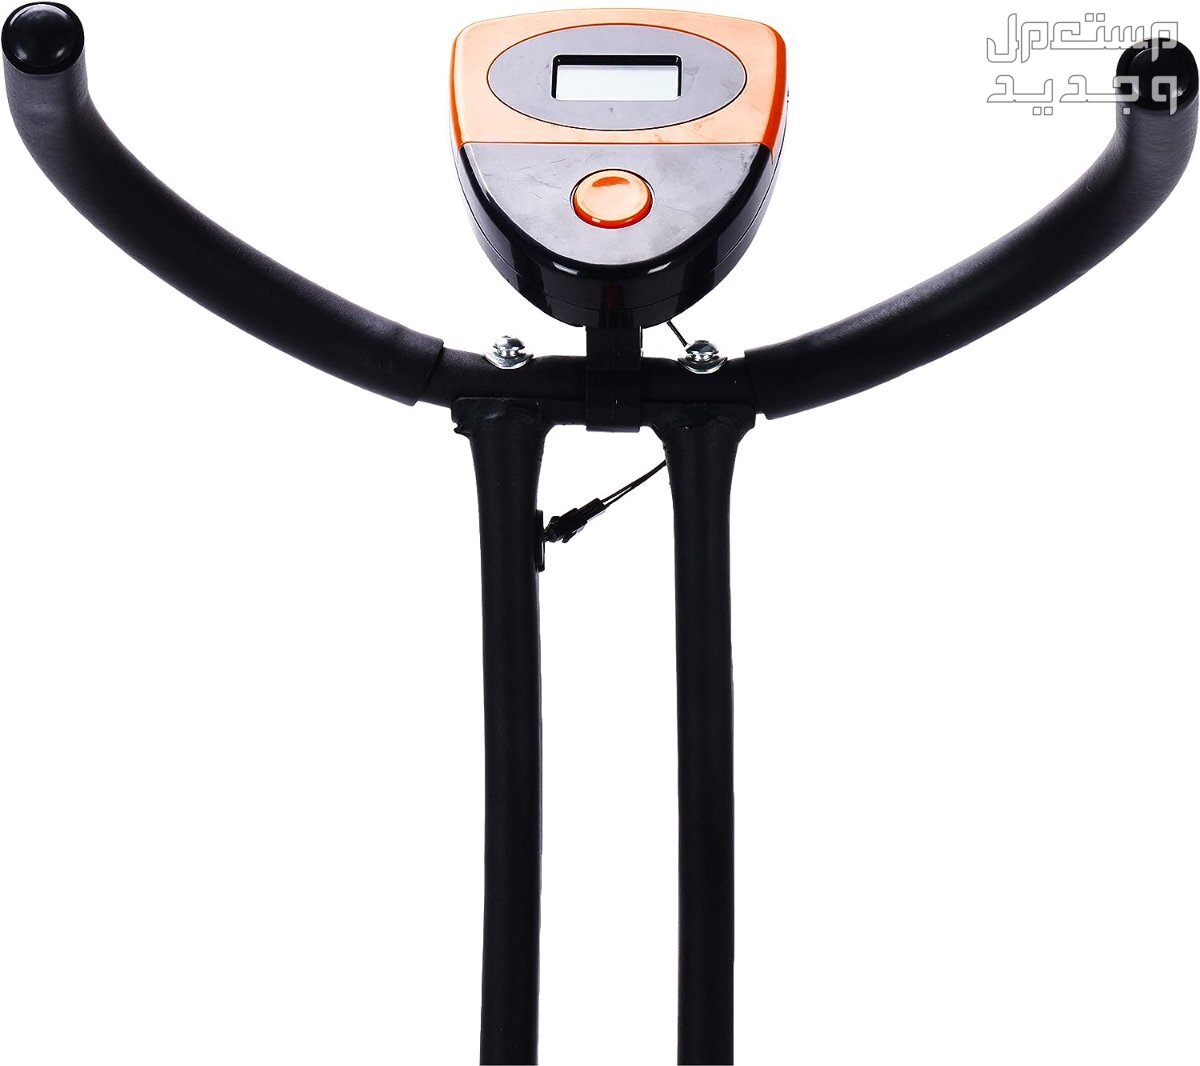 ارخص اجهزة رياضية مستعملة بالمواصفات والصور والاسعار في البحرين جهاز ‎دراجة كارديو ‎بودي بيلدر موديل ‎38-1112-Orange